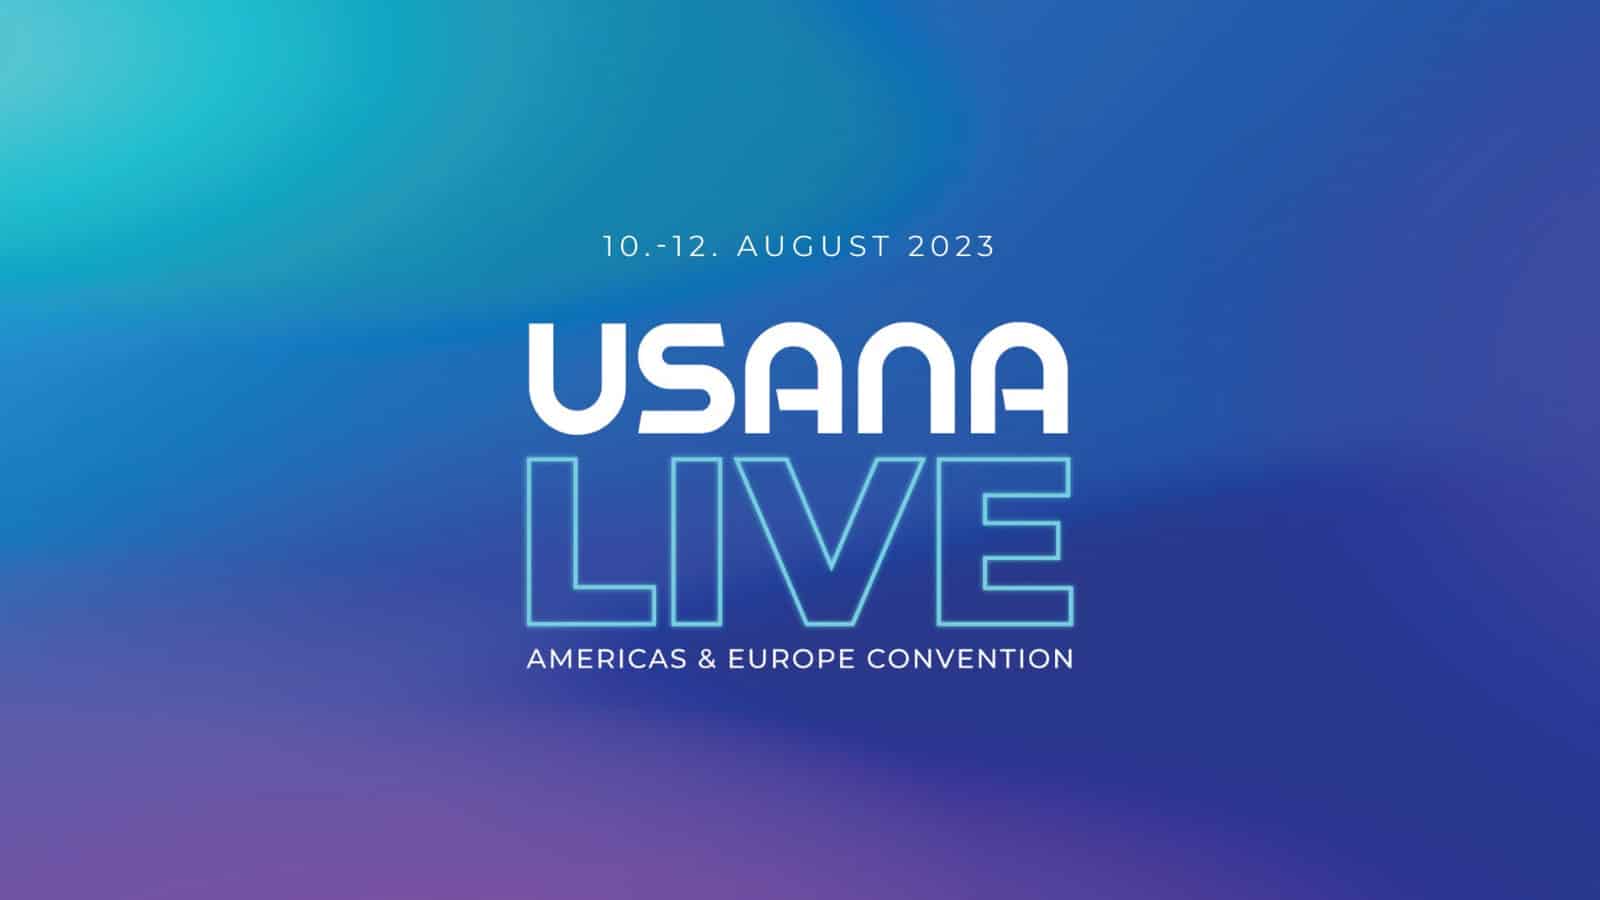 Register Today USANA Live 2023 Americas & Europe Convention